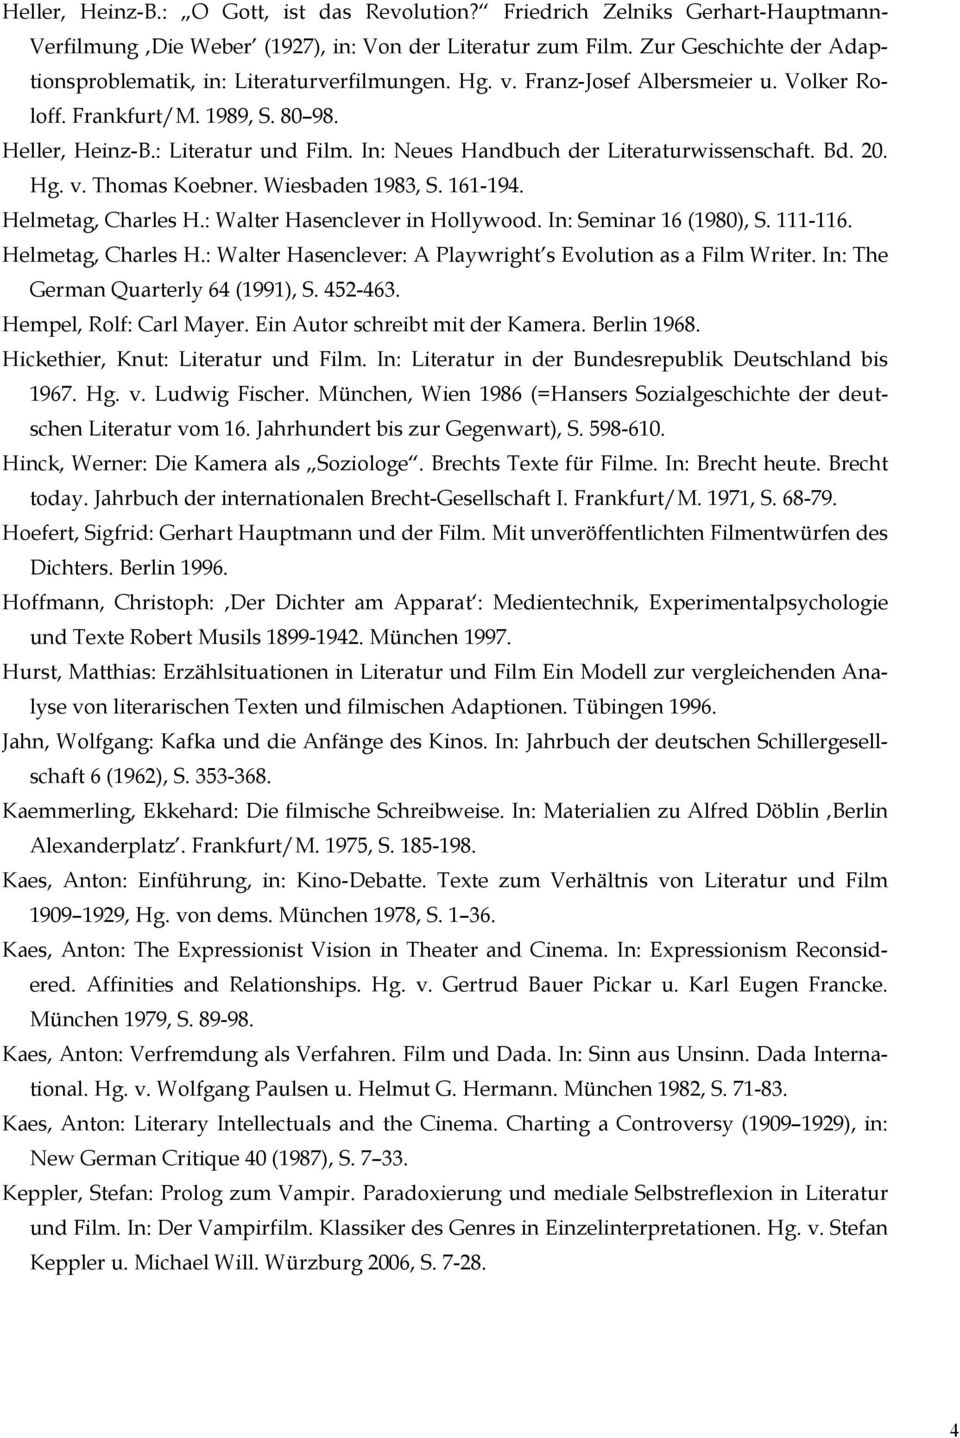 In: Neues Handbuch der Literaturwissenschaft. Bd. 20. Hg. v. Thomas Koebner. Wiesbaden 1983, S. 161-194. Helmetag, Charles H.: Walter Hasenclever in Hollywood. In: Seminar 16 (1980), S. 111-116.